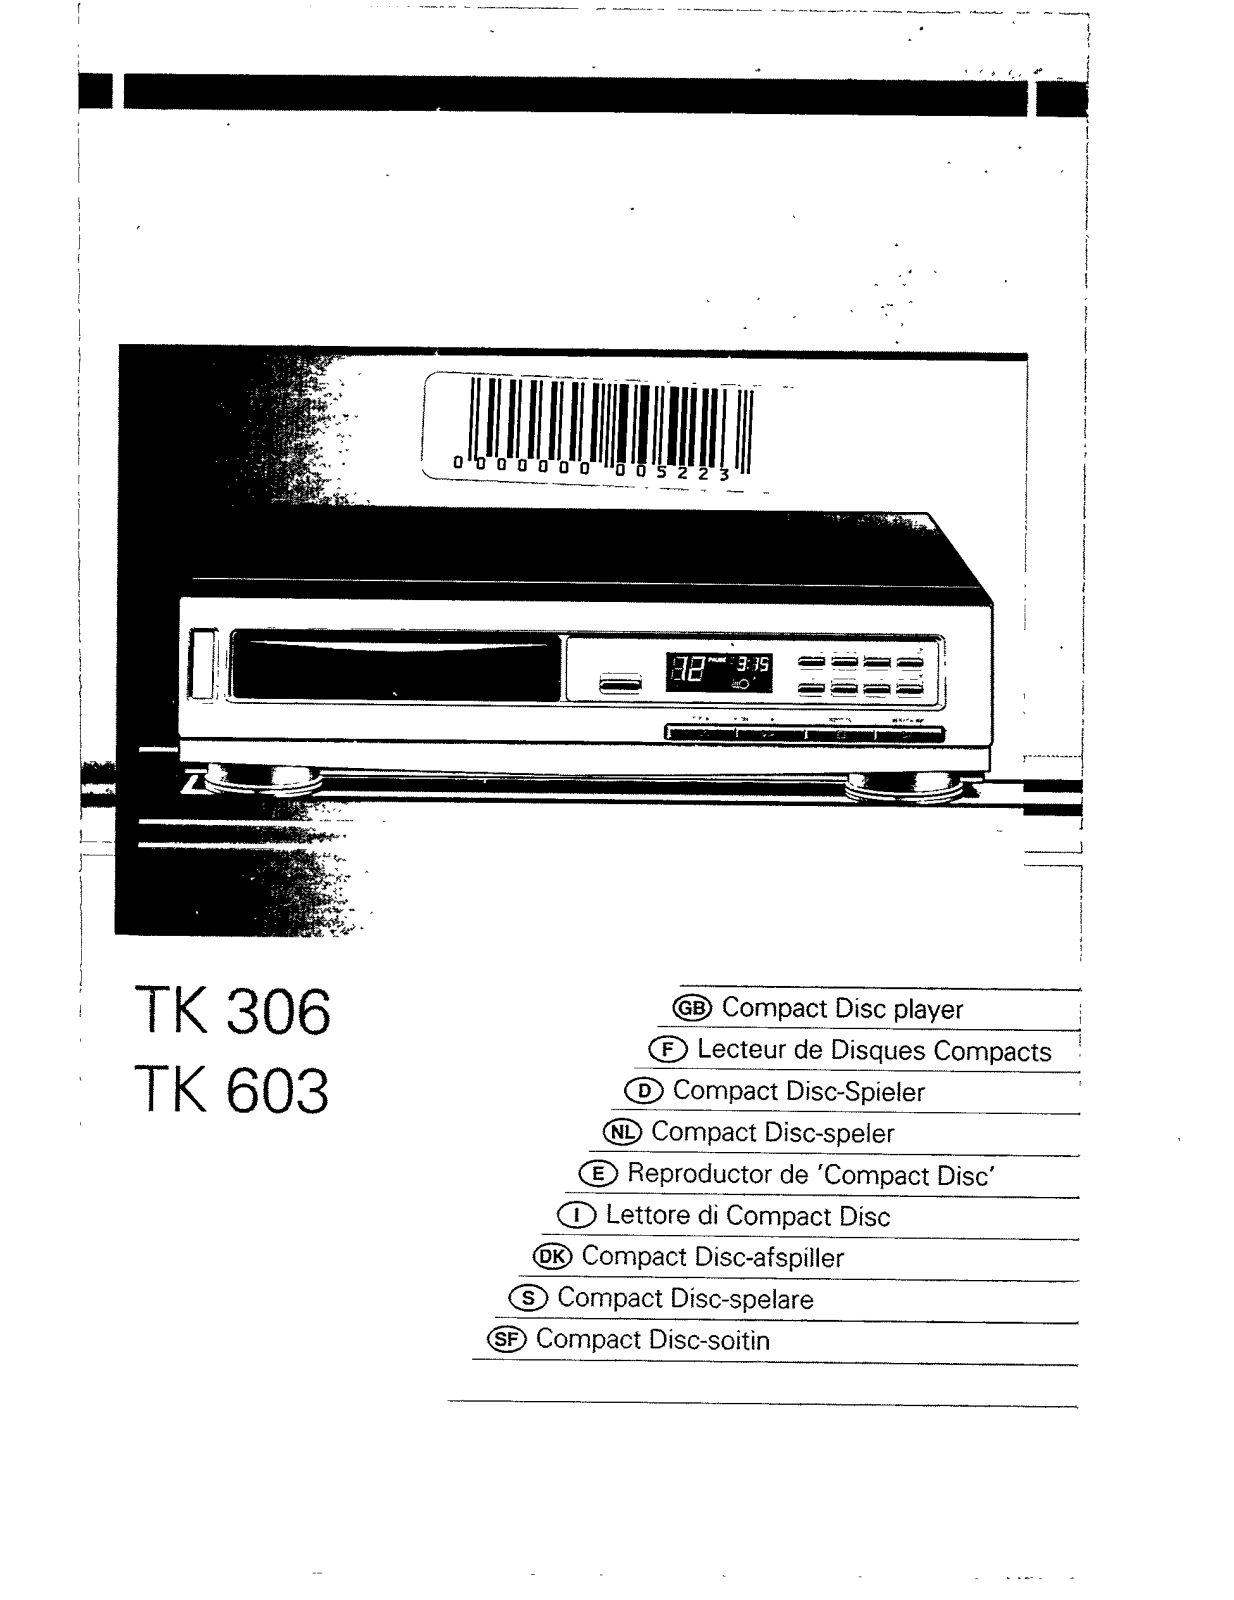 RADIOLA TK603, TK306 User Manual